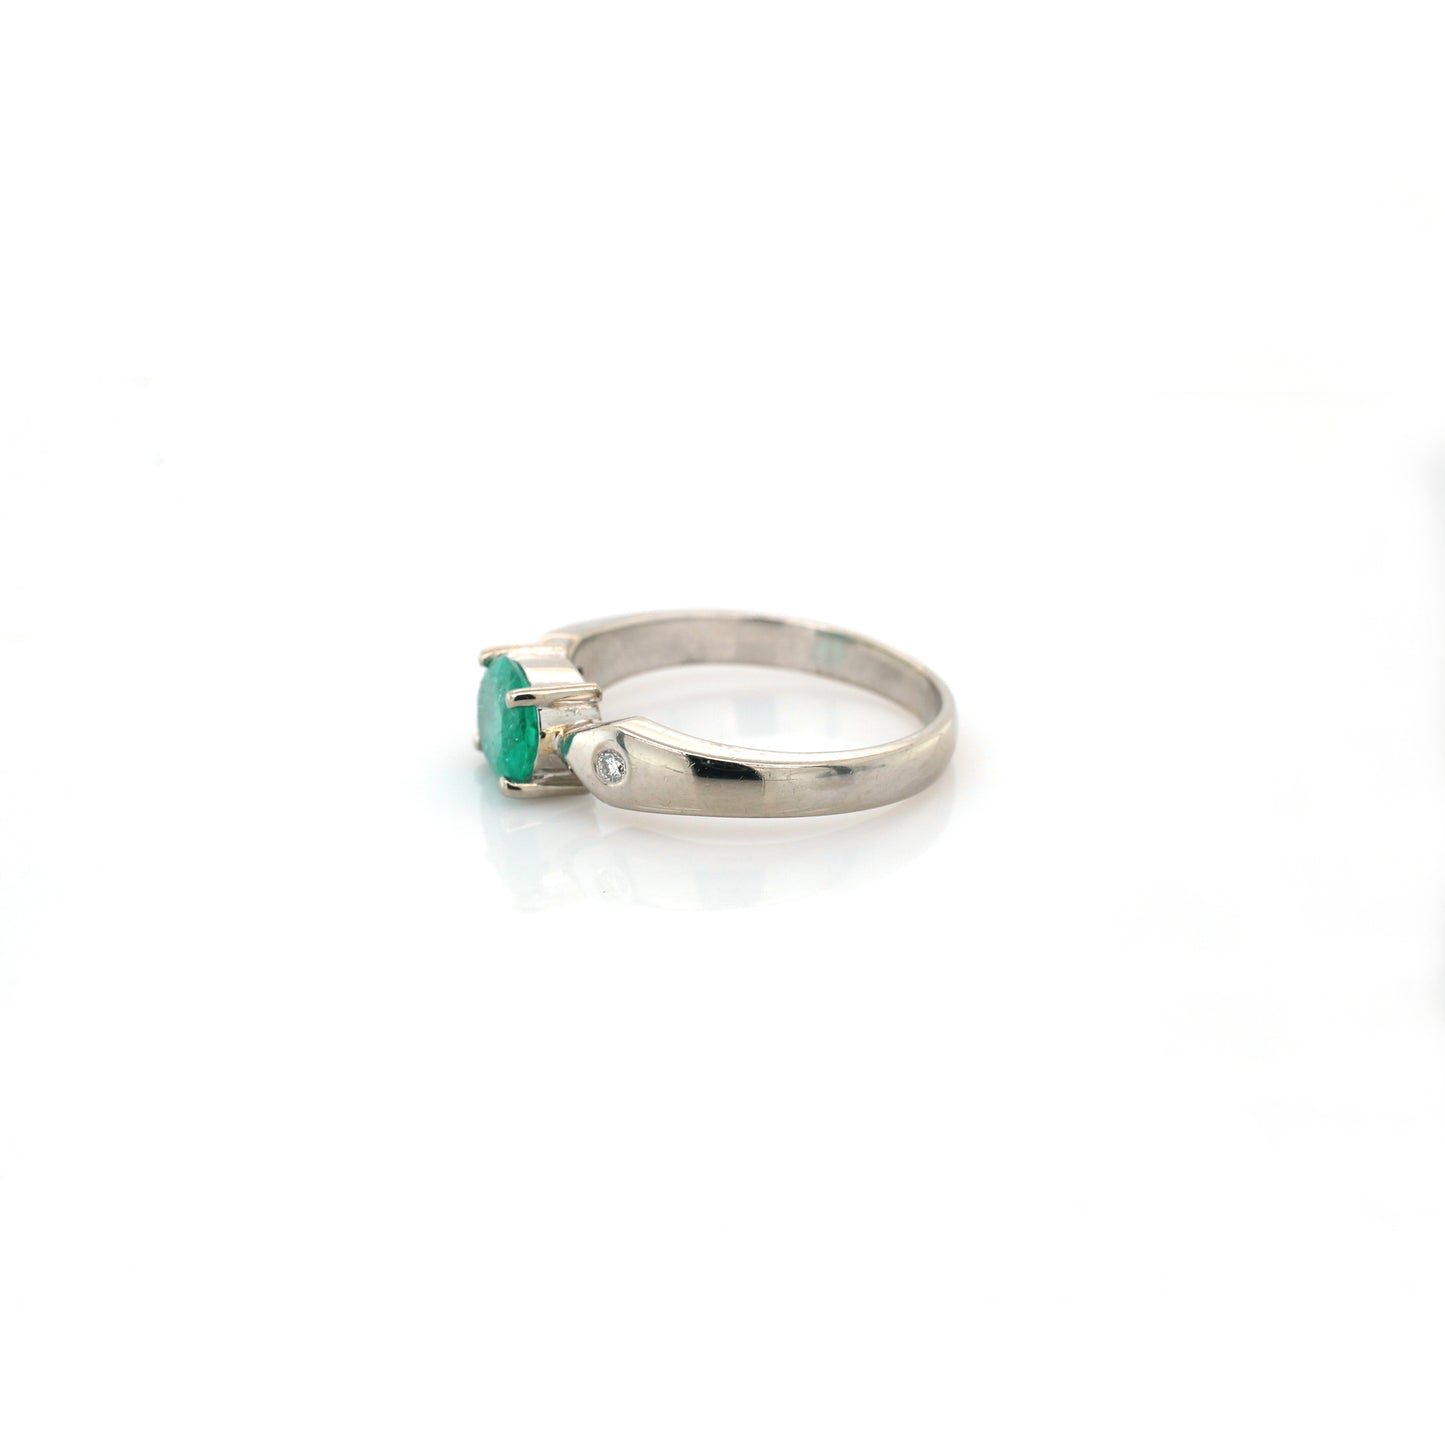 Emerald 1.0 carat & Diamond 0.04 Ladies Ring -18k White gold 4.73 gm